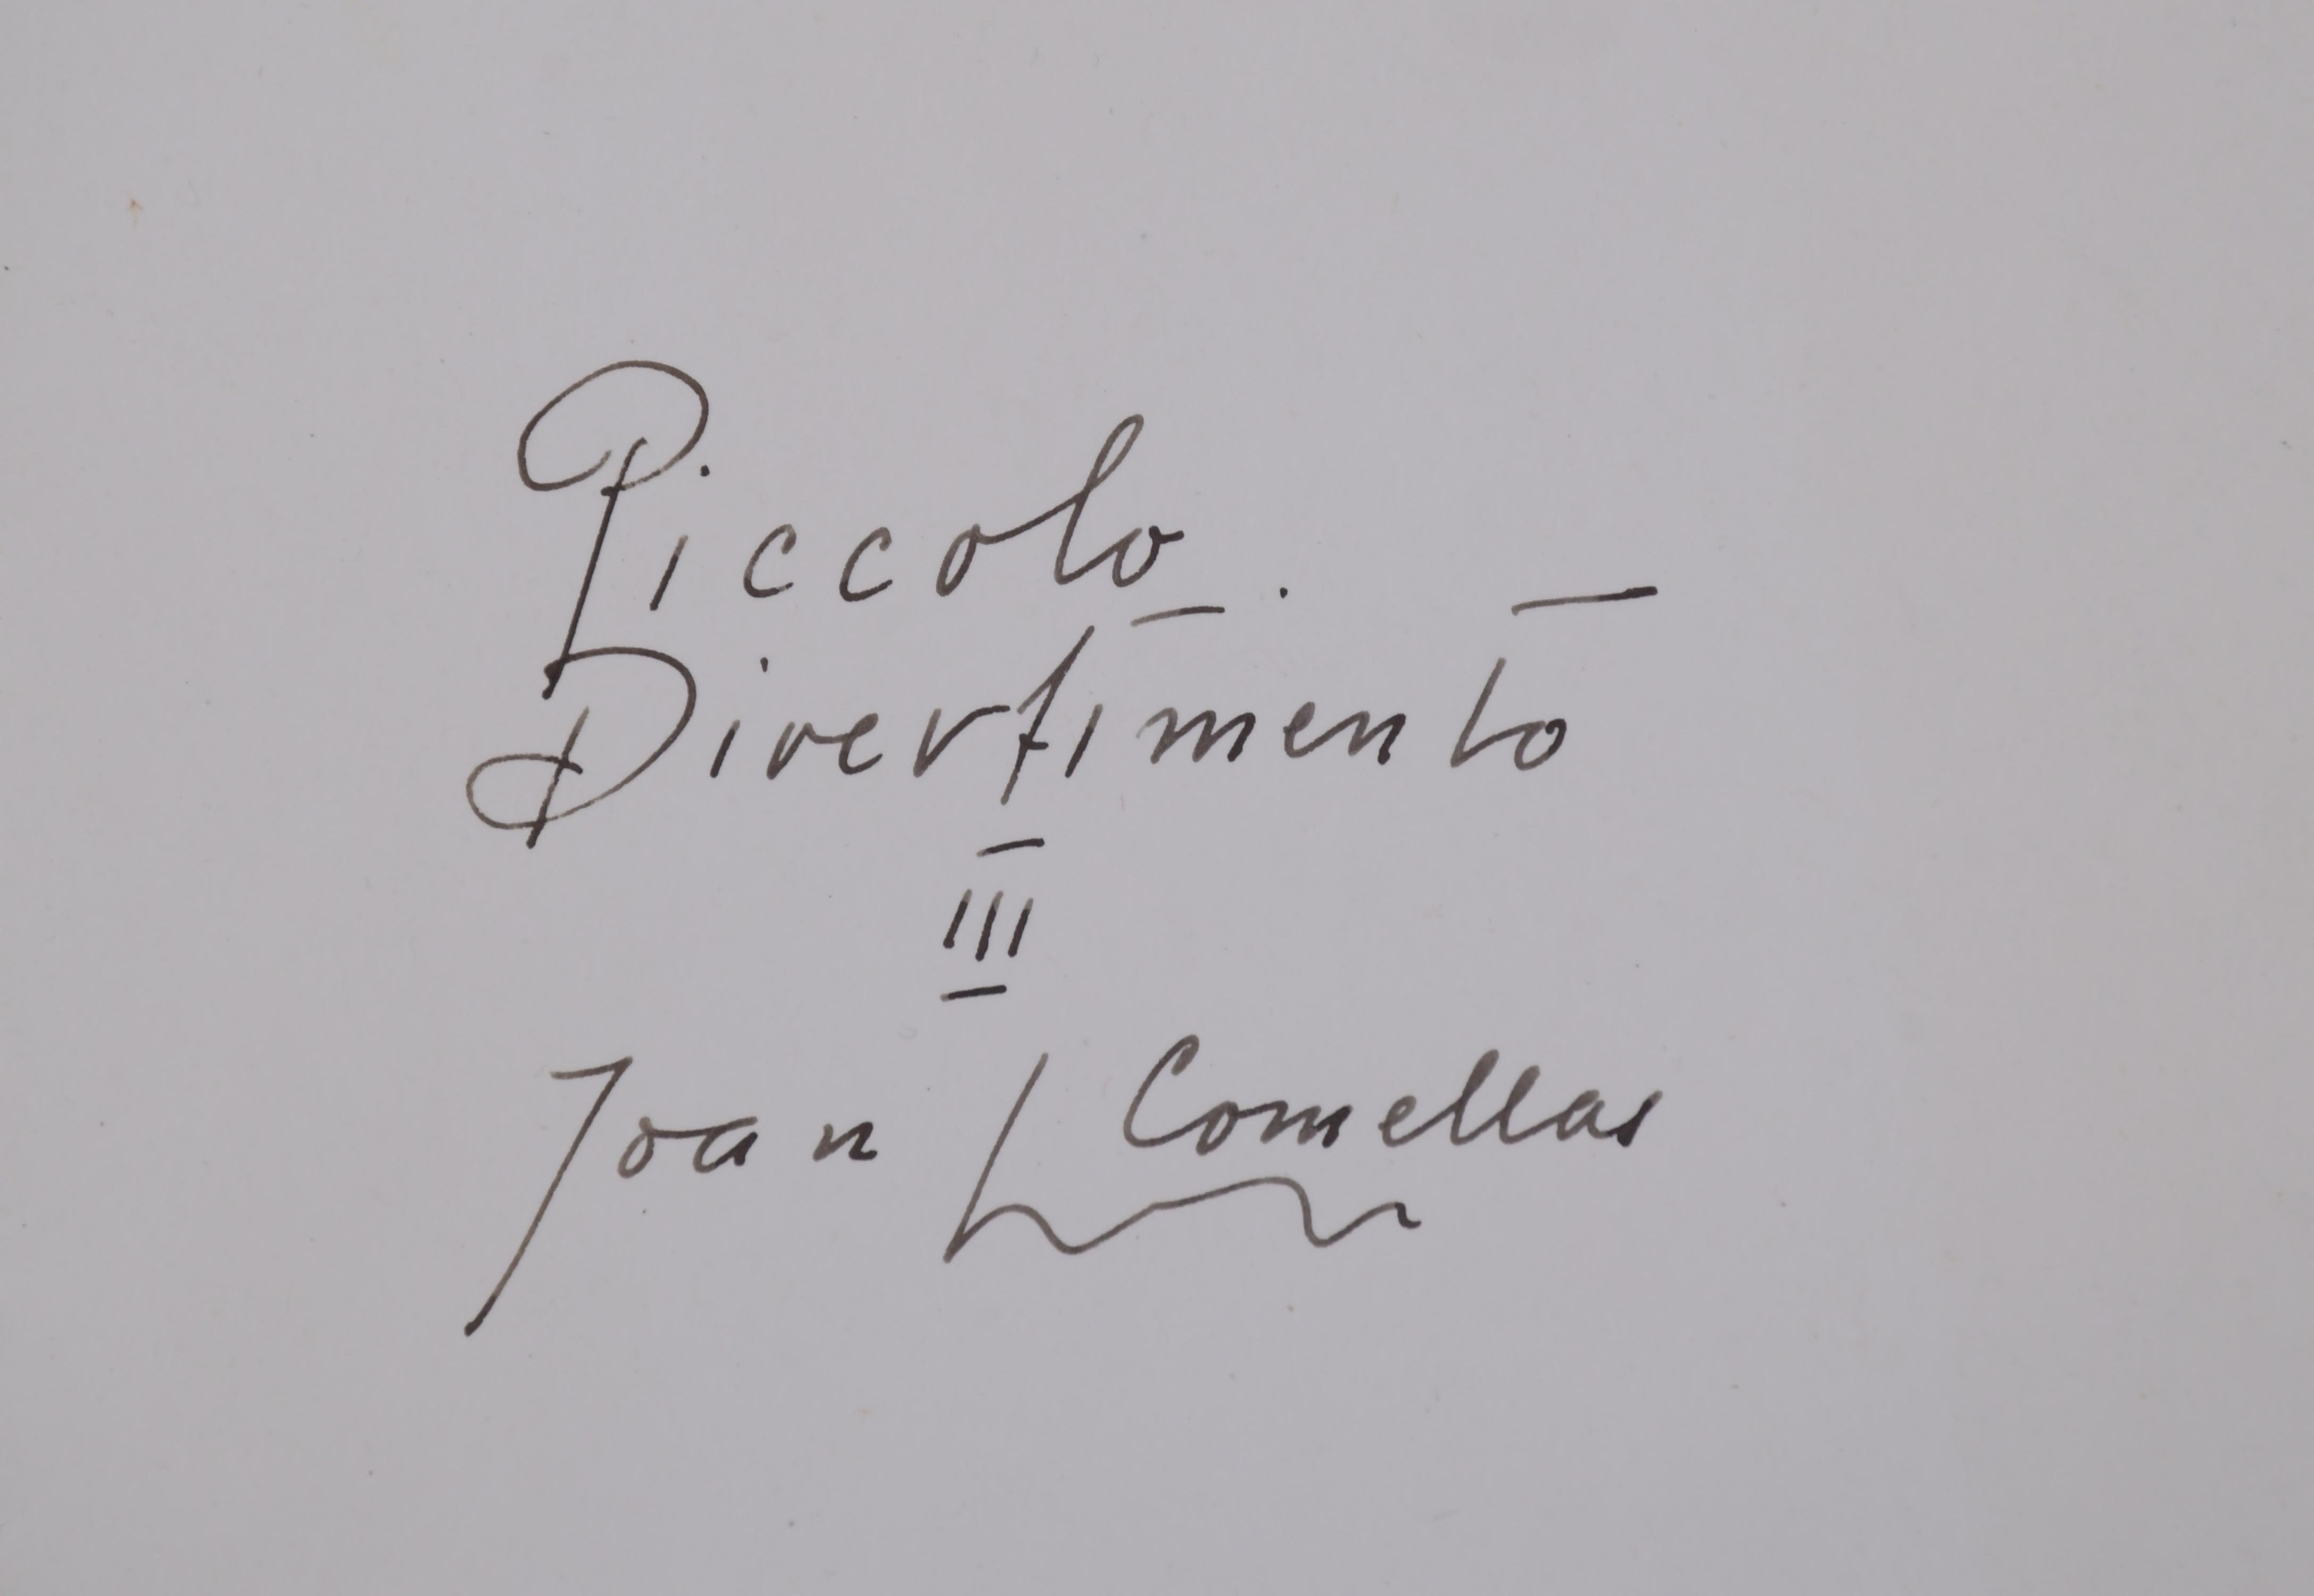 JOAN COMELLAS (1913-2000).  "PICCOLO DIVERTIMENTO", 1978-19